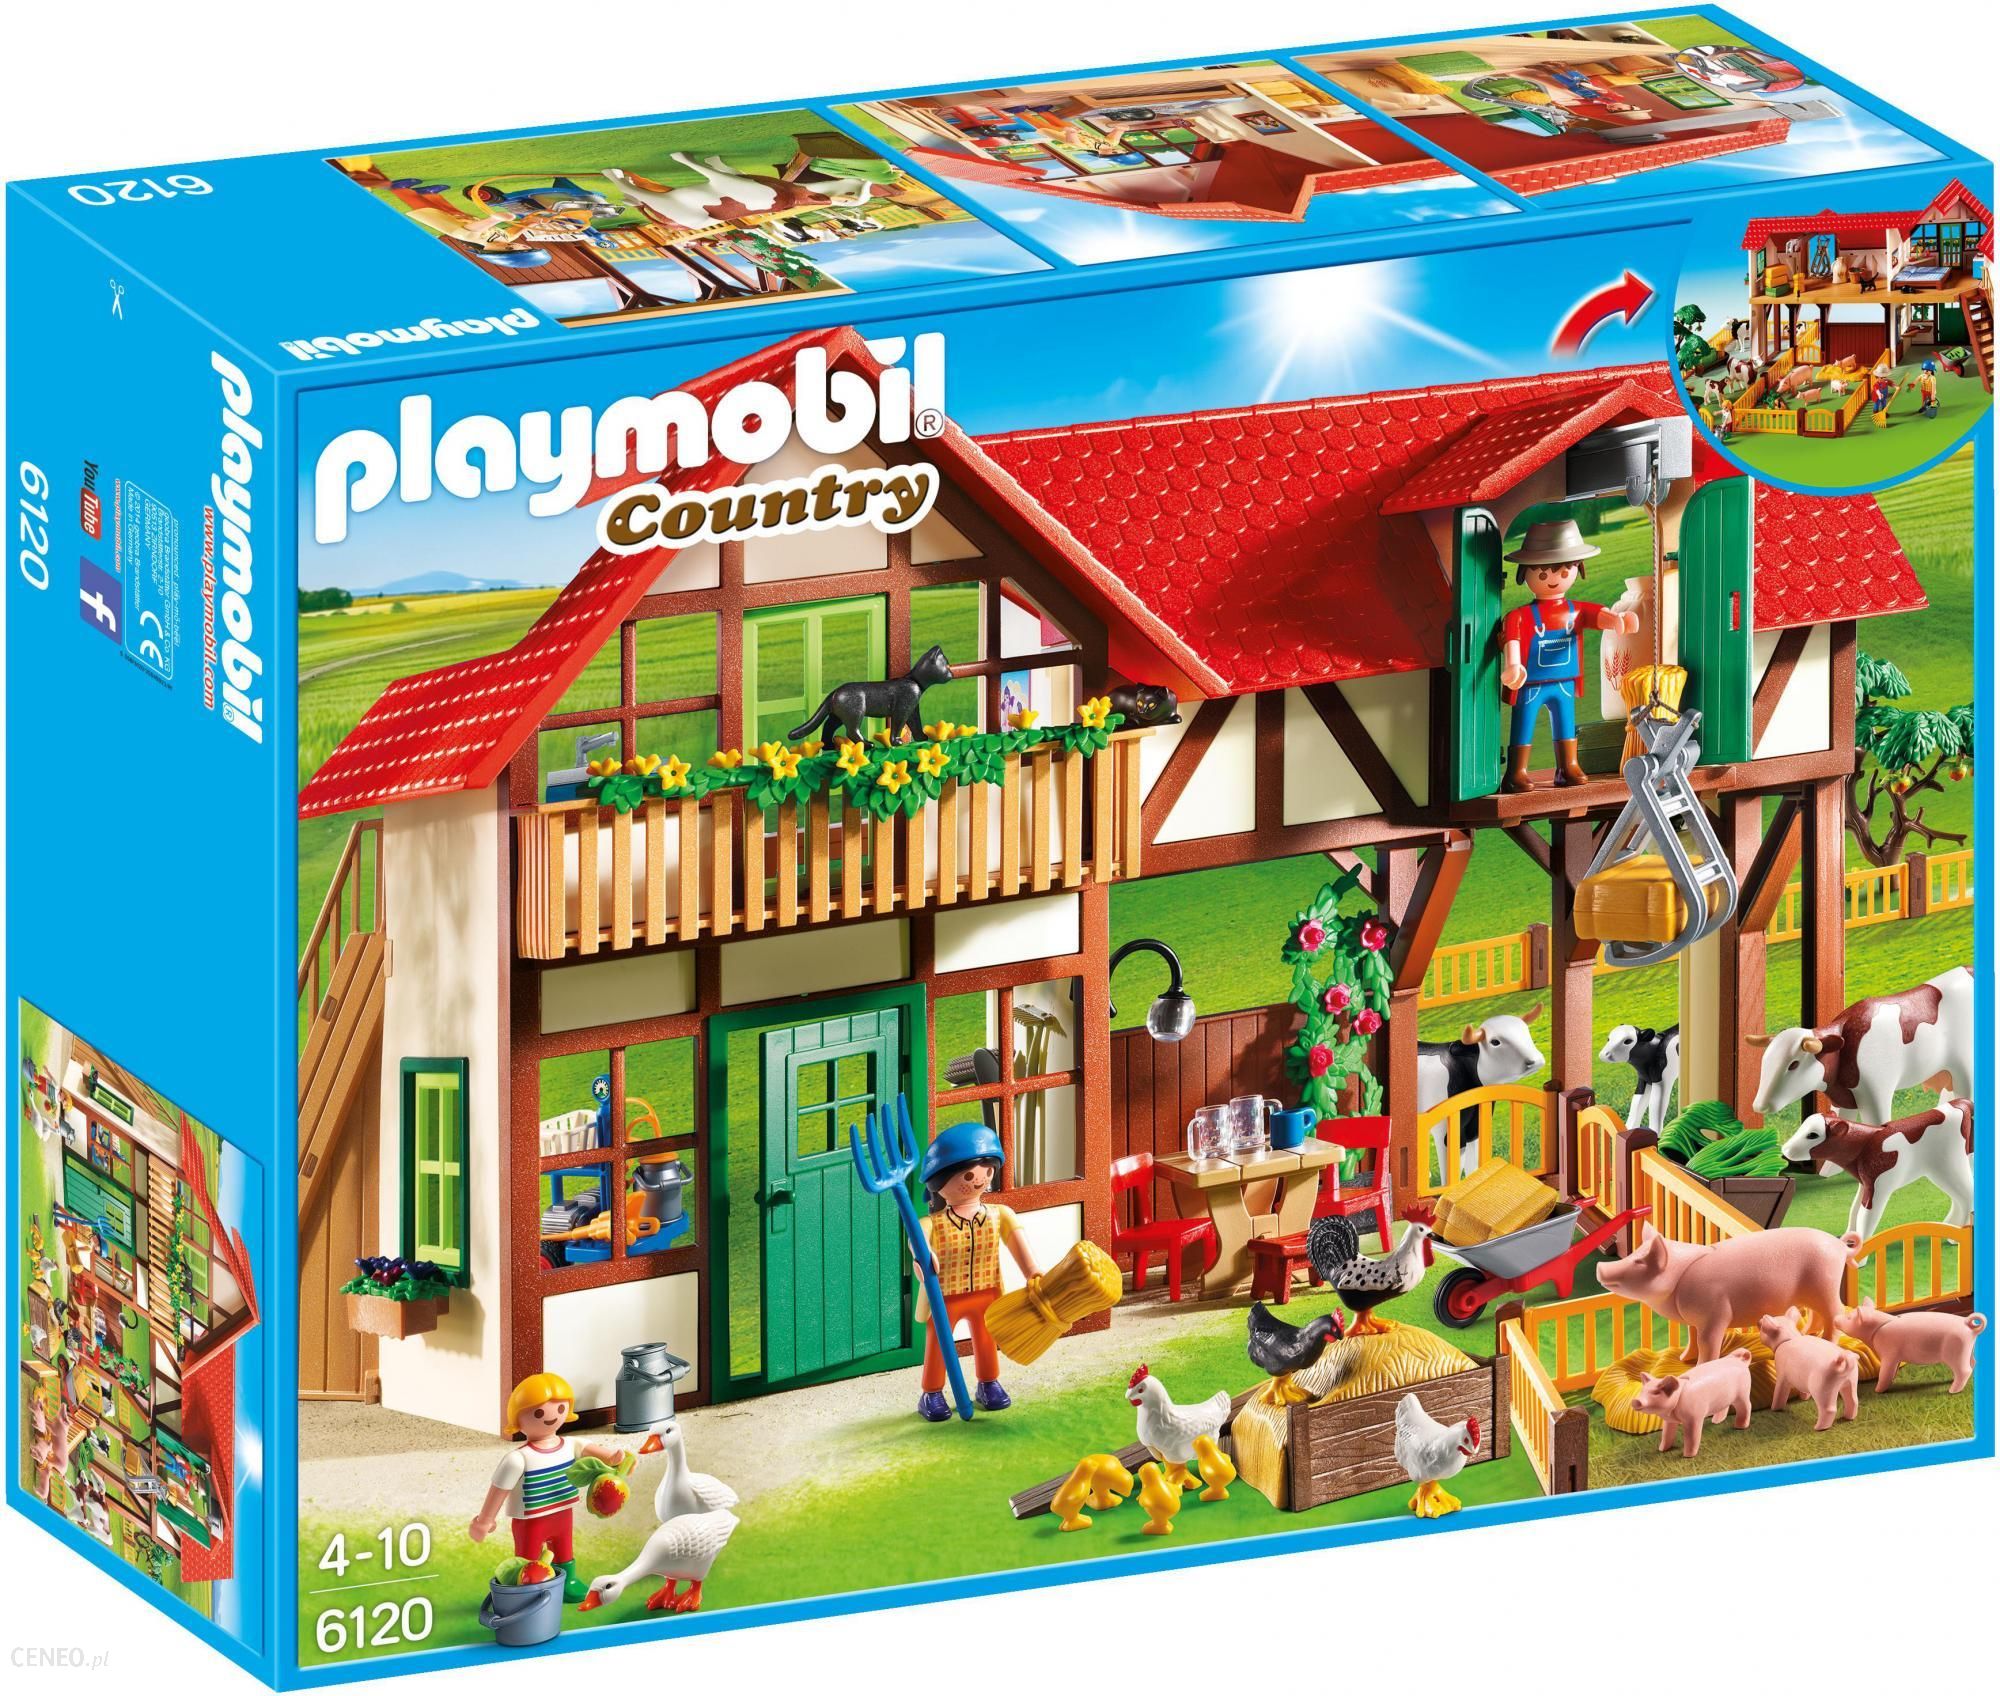 pas Forbløffe røg Playmobil Country Duża Farma 6120 - ceny i opinie - Ceneo.pl